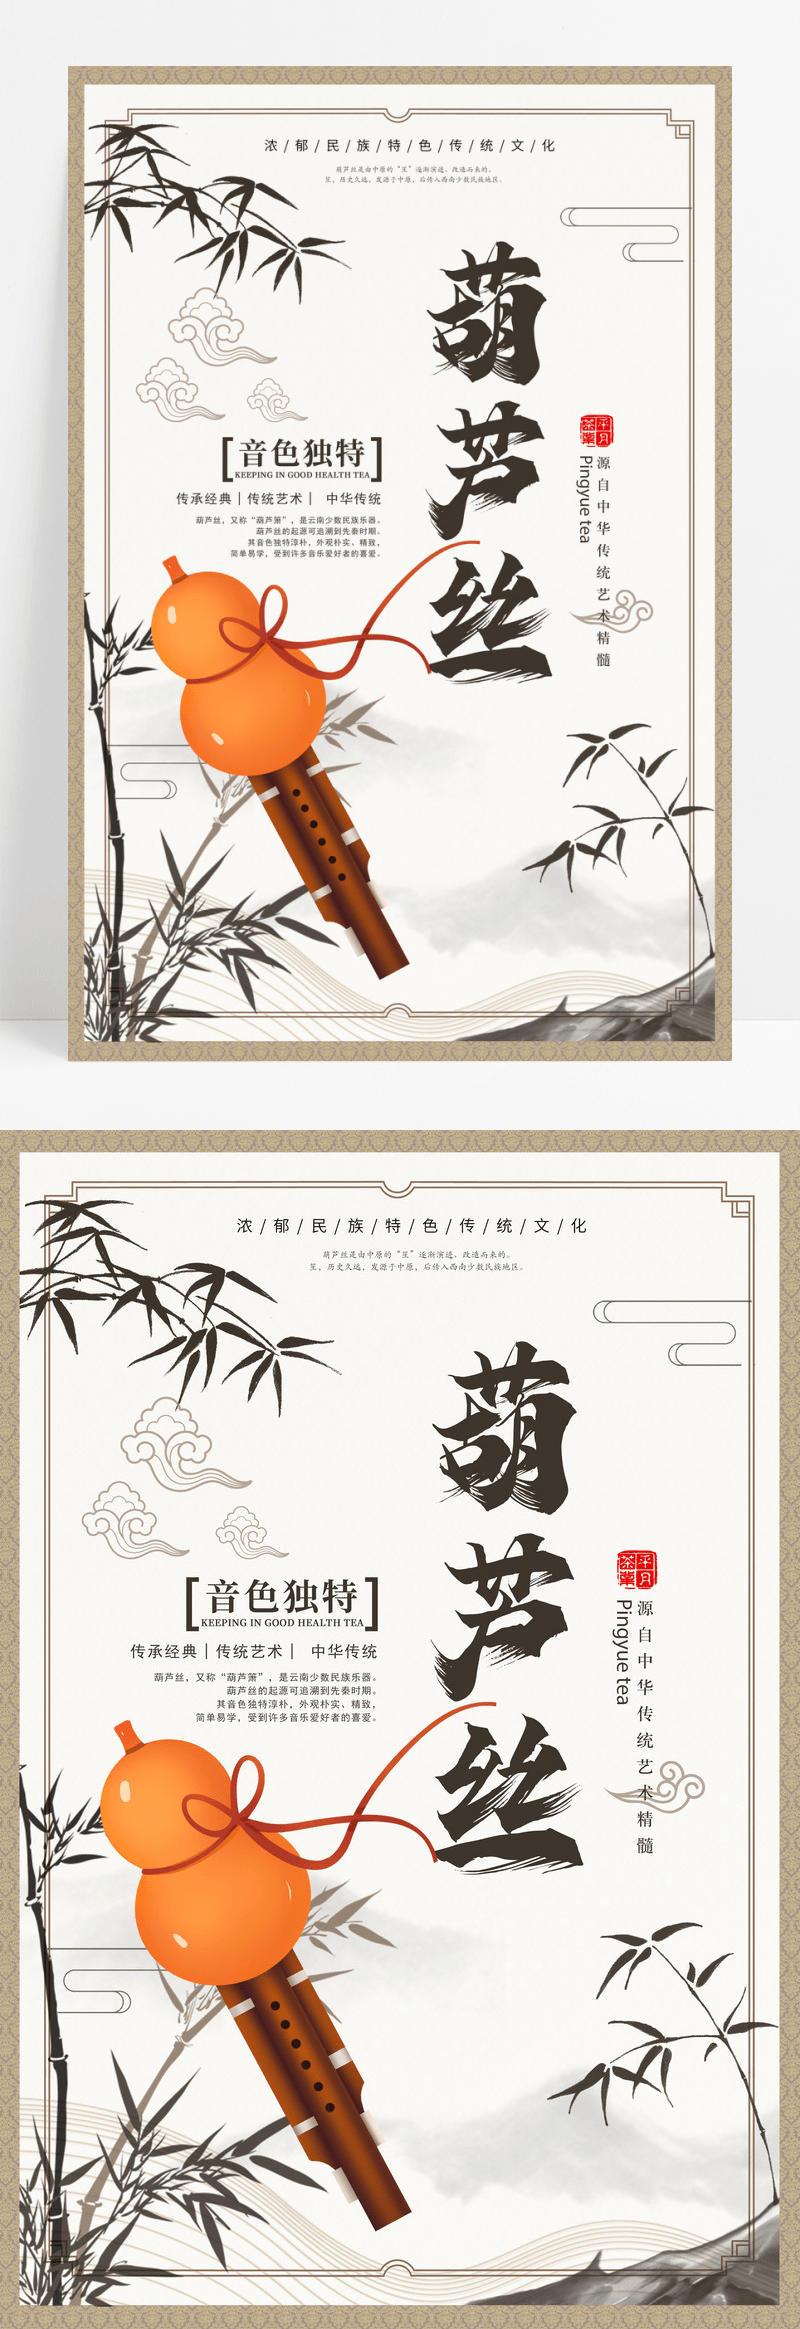 中国风白色简洁葫芦丝乐器培训招生海报